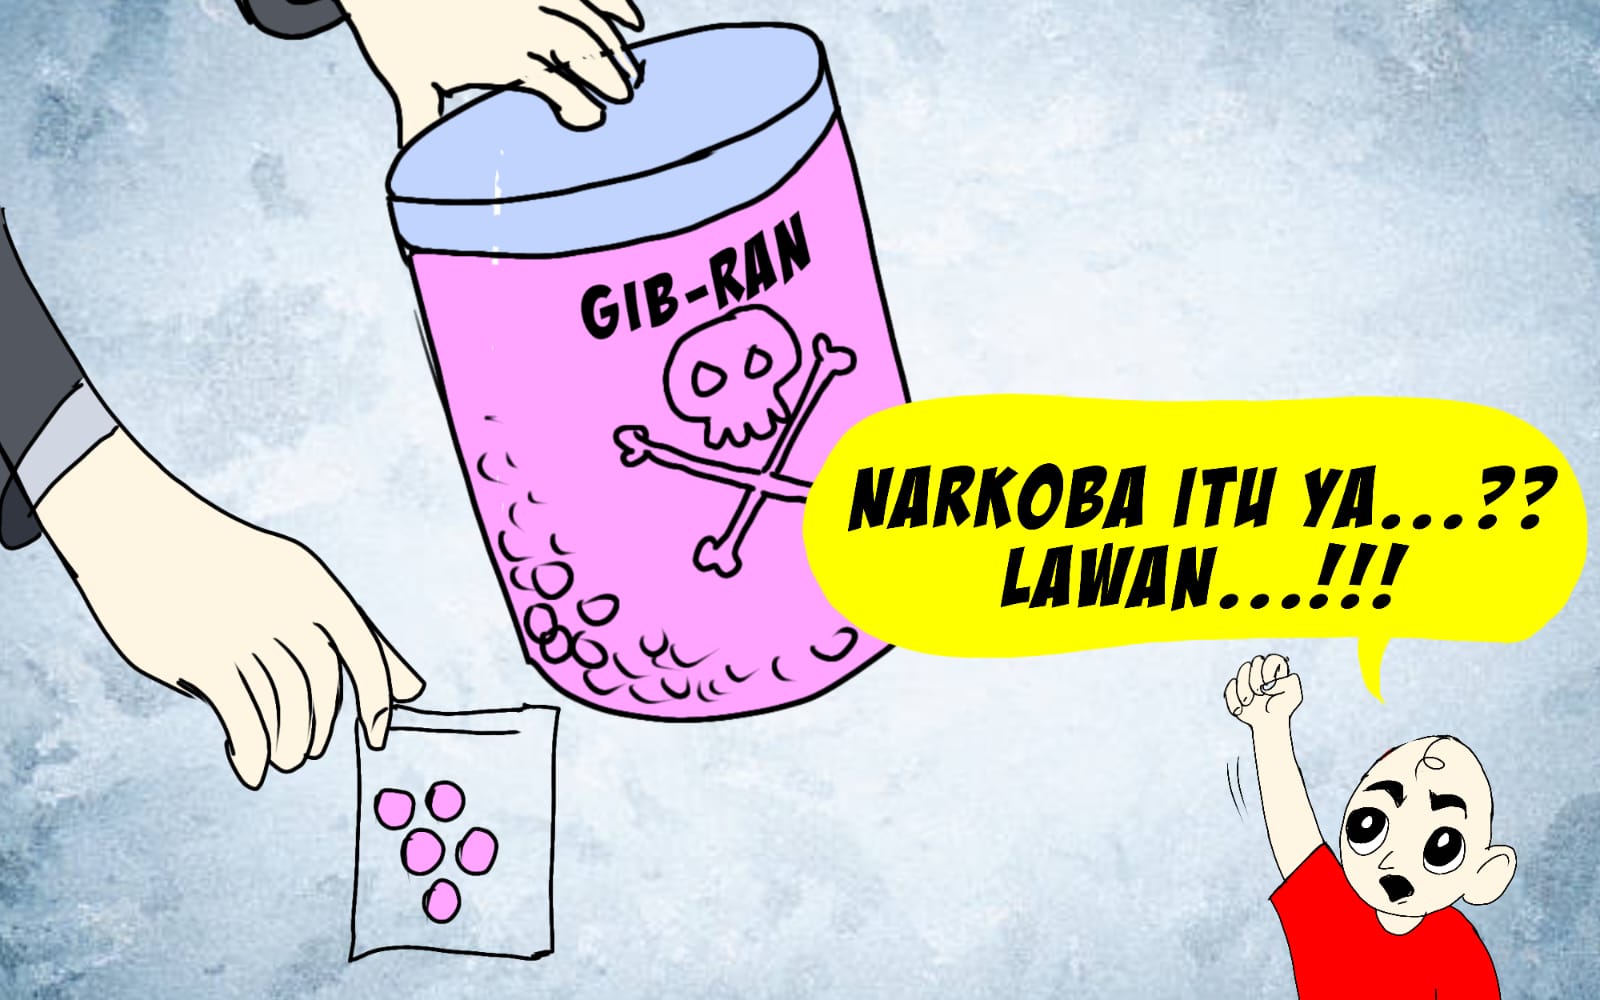 GIB-RAN, Jenis Narkoba Politik!